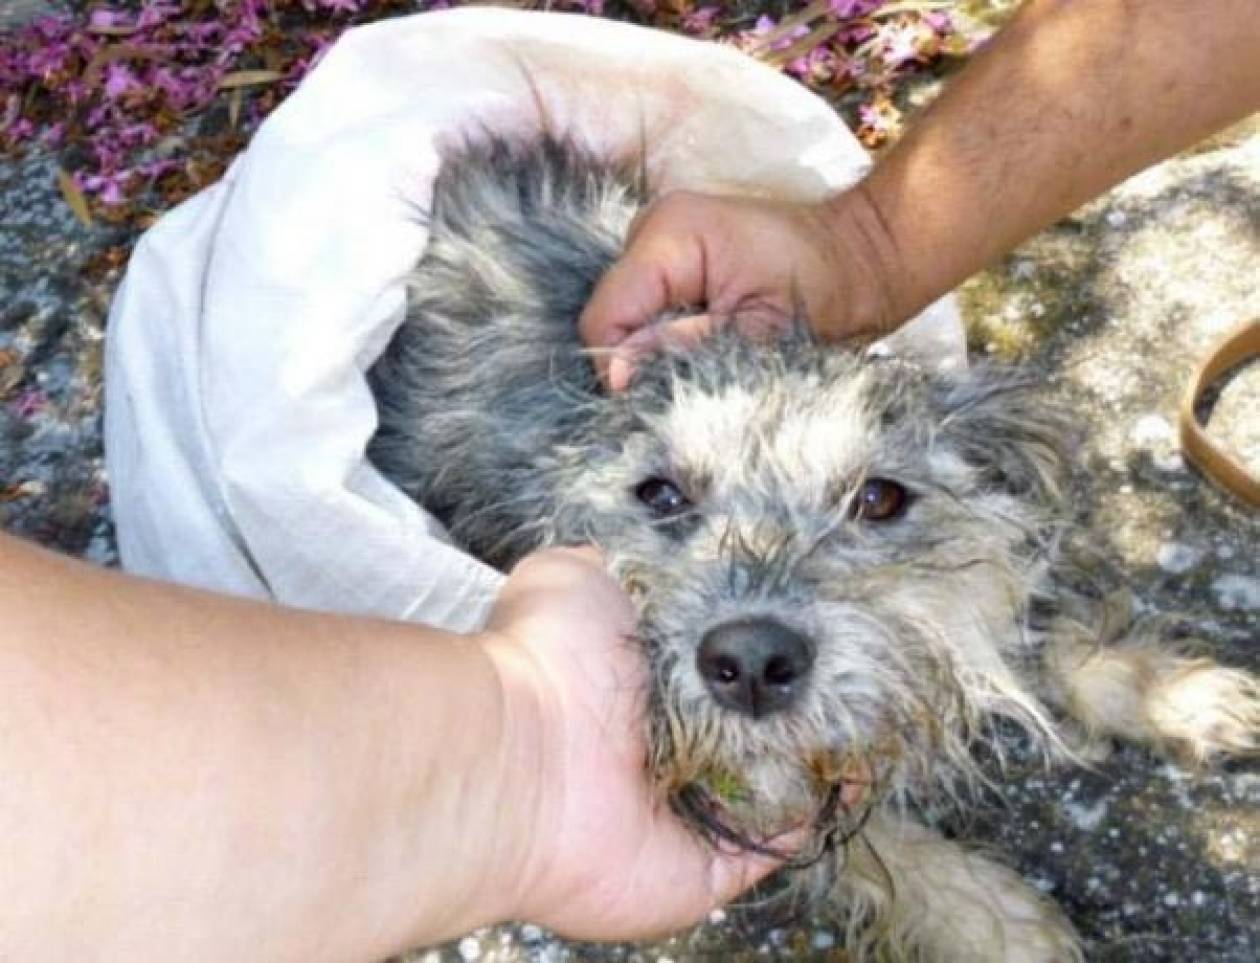 31.200 ευρώ πρόστιμο από τον Δήμο Κιλκίς επειδή πέταξε το σκυλί του!